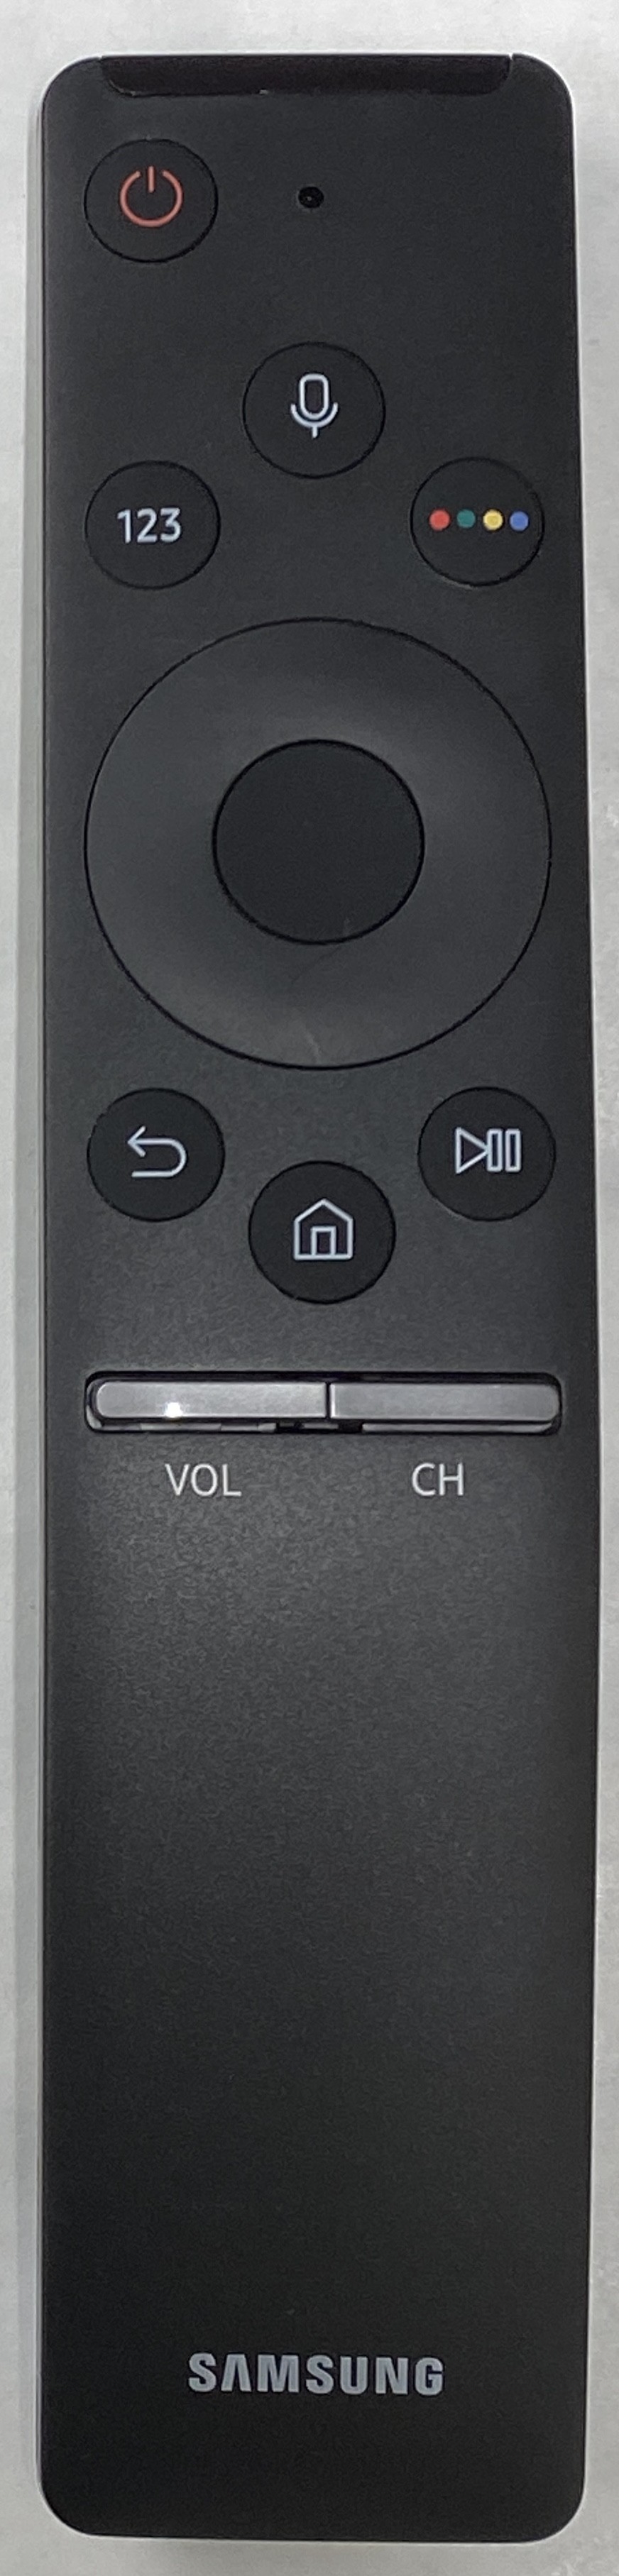 SAMSUNG UE32M5500AKXXU Smart Remote Control Original 